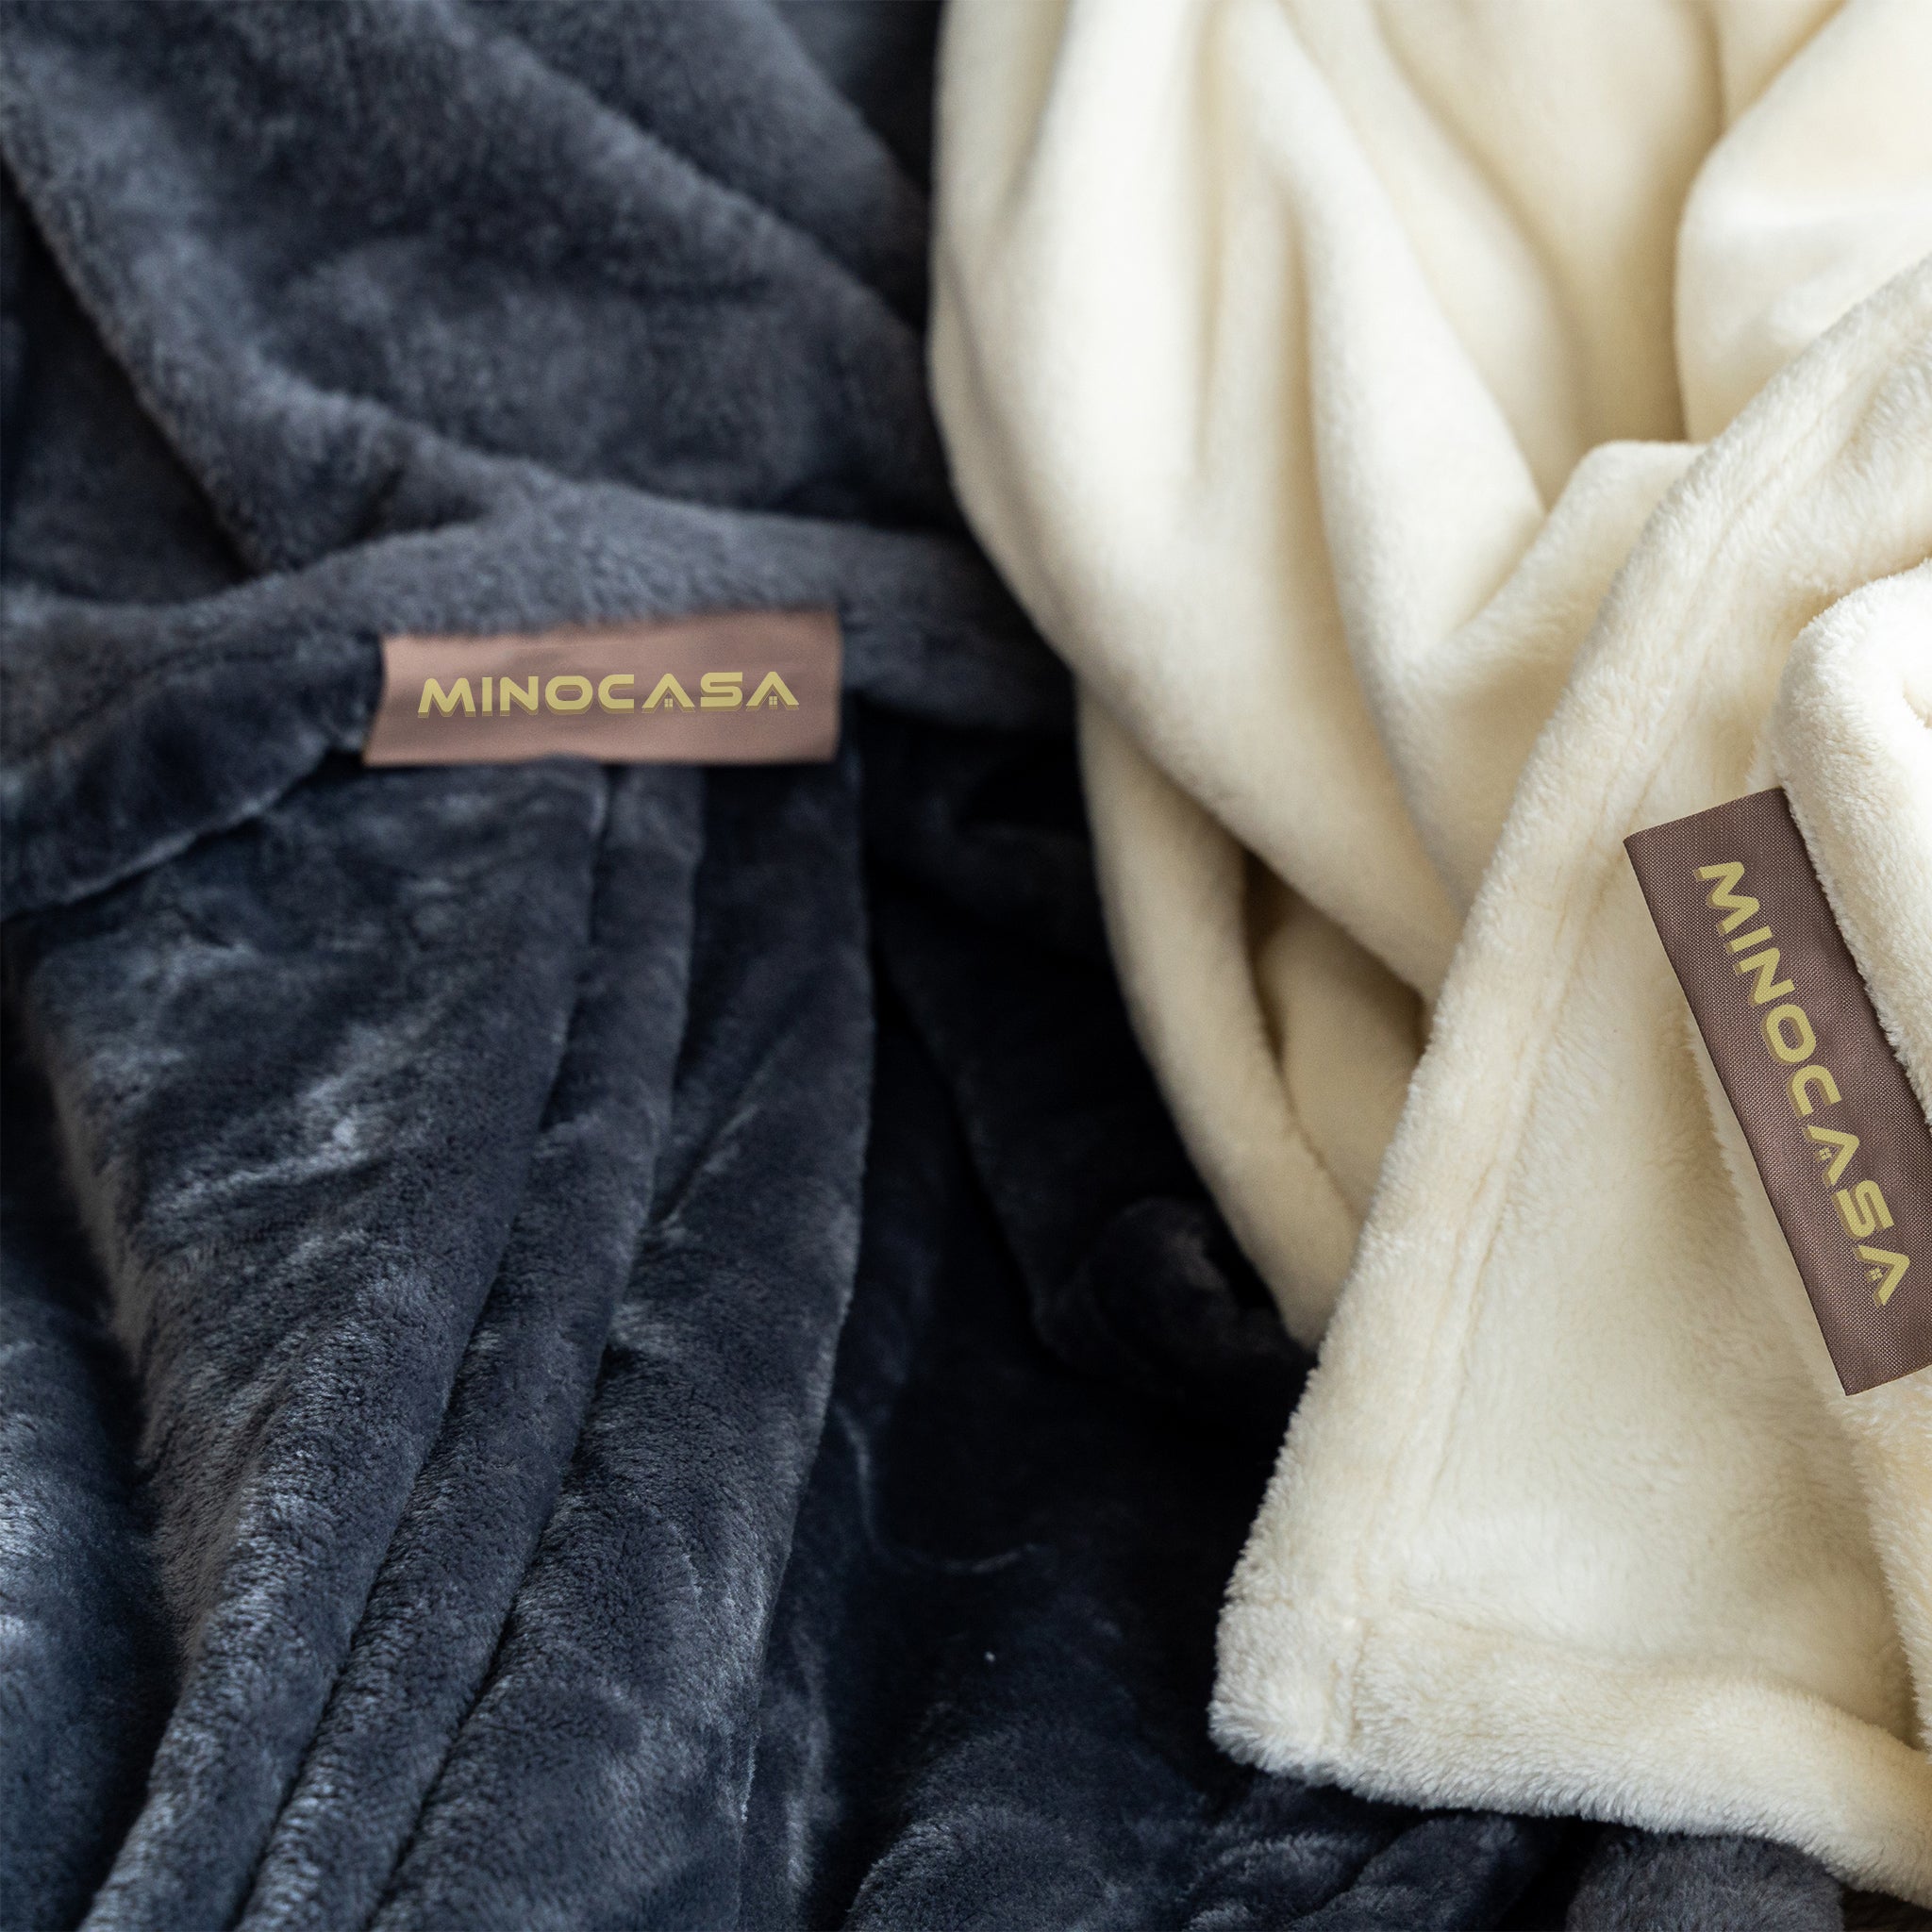 Minocasa Flannel Fleece Oversized Throw Blanket Color Zoom and Comfort